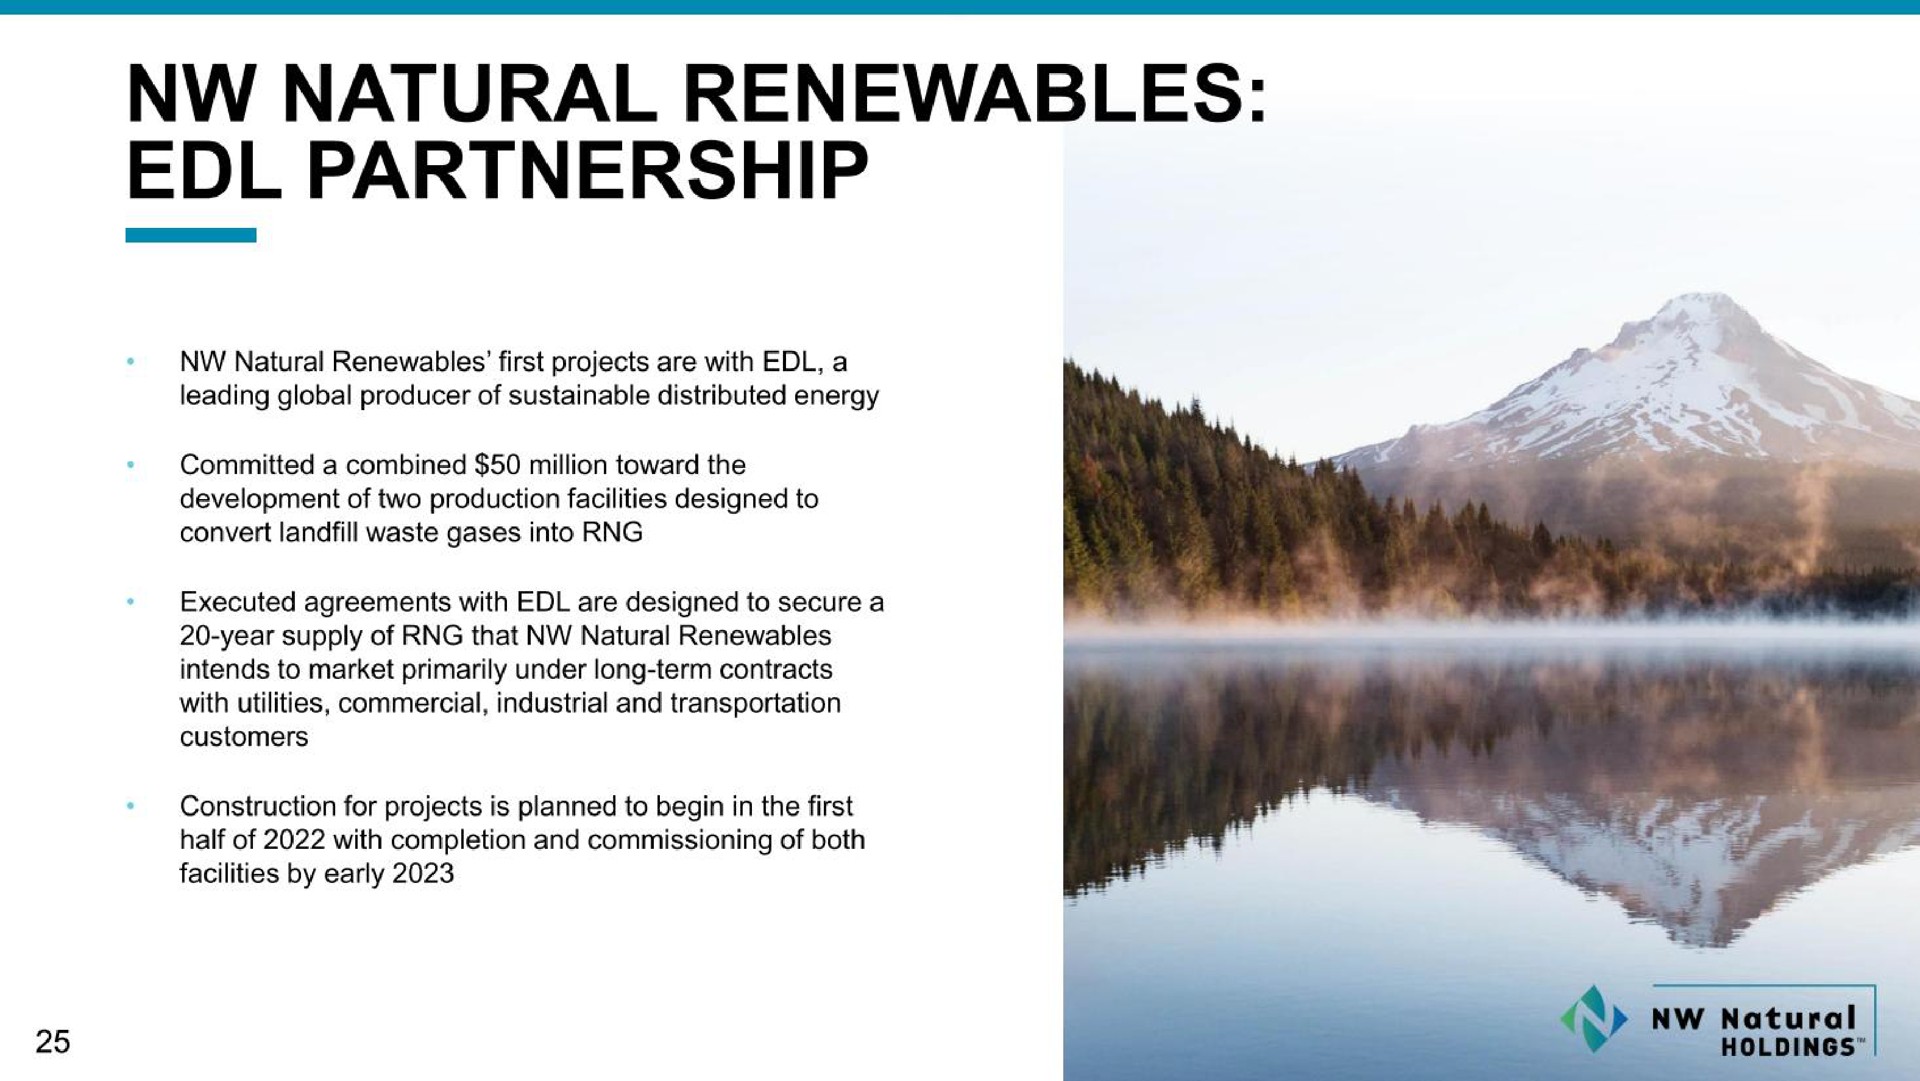 natural partnership | NW Natural Holdings